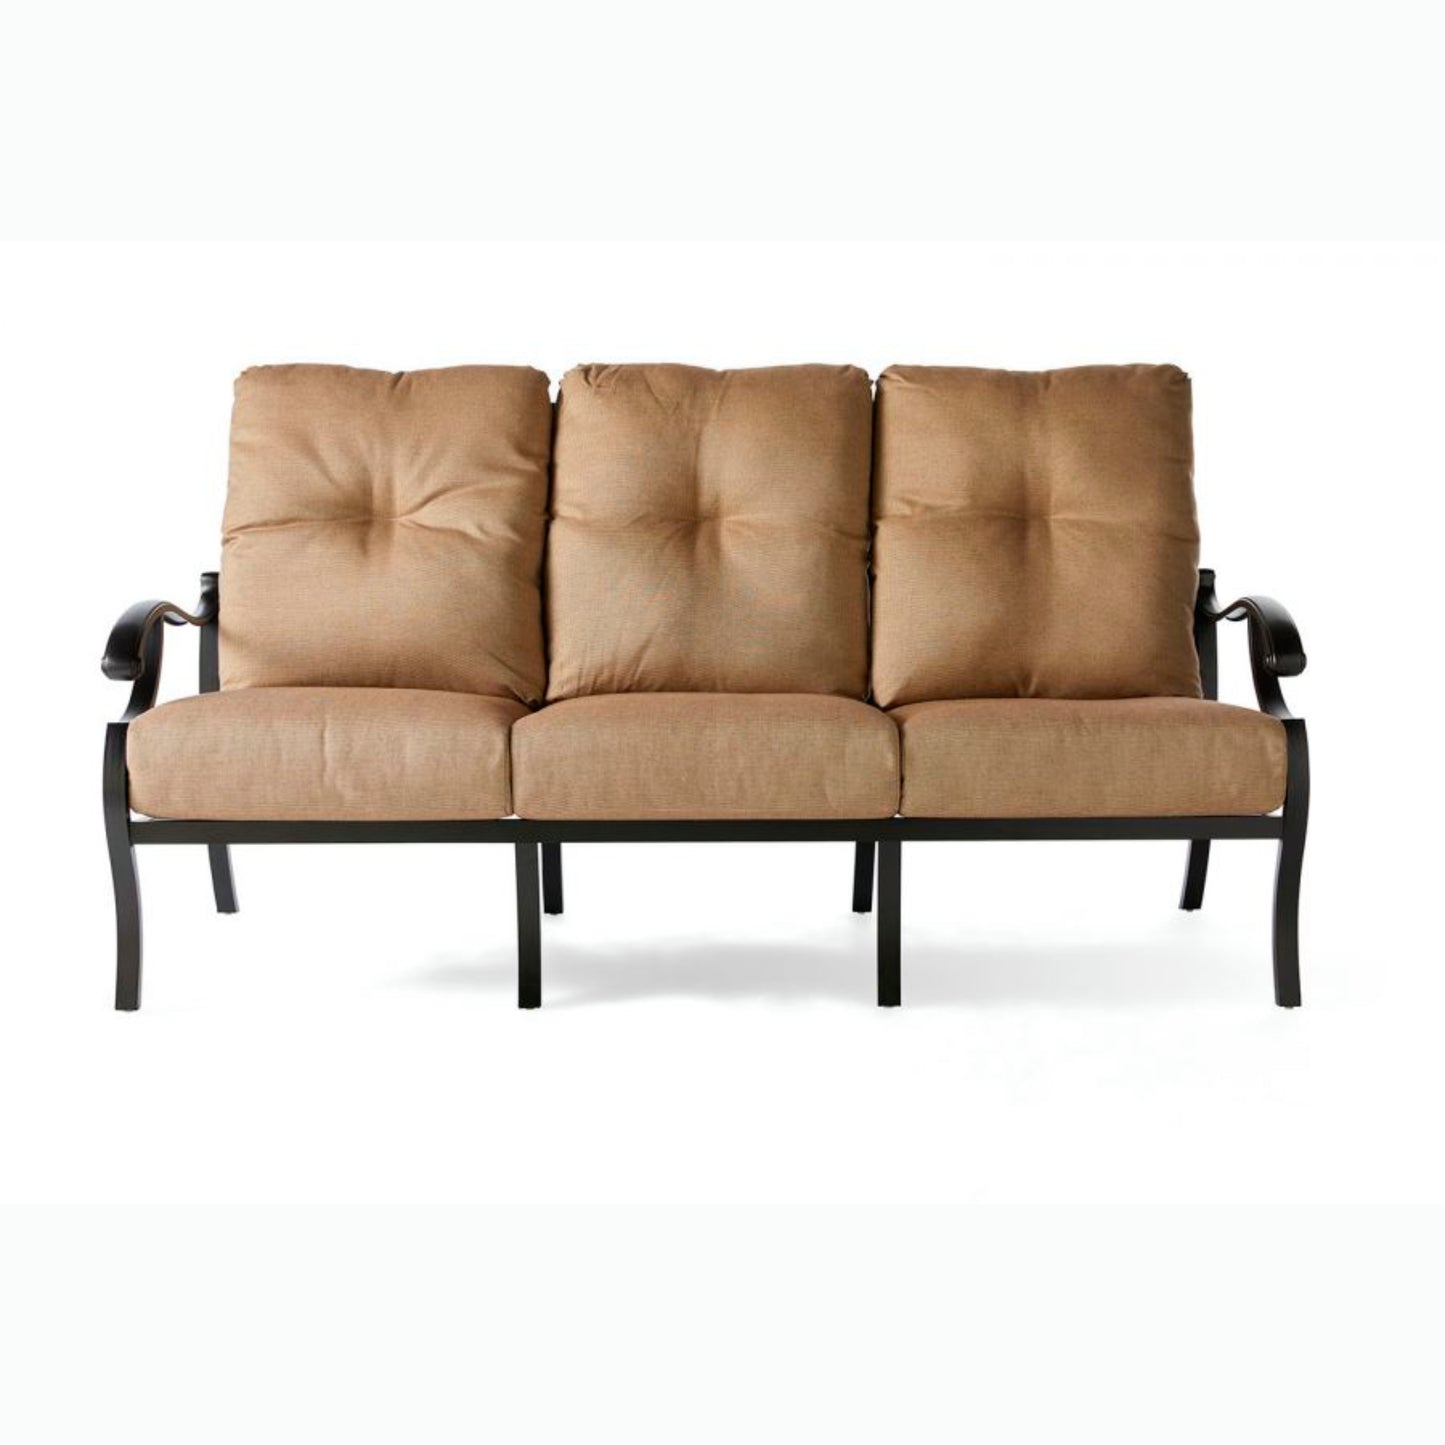 Mallin Volare Cushion Sofa VO-881 - Autumn Rust / Rochelle Spice